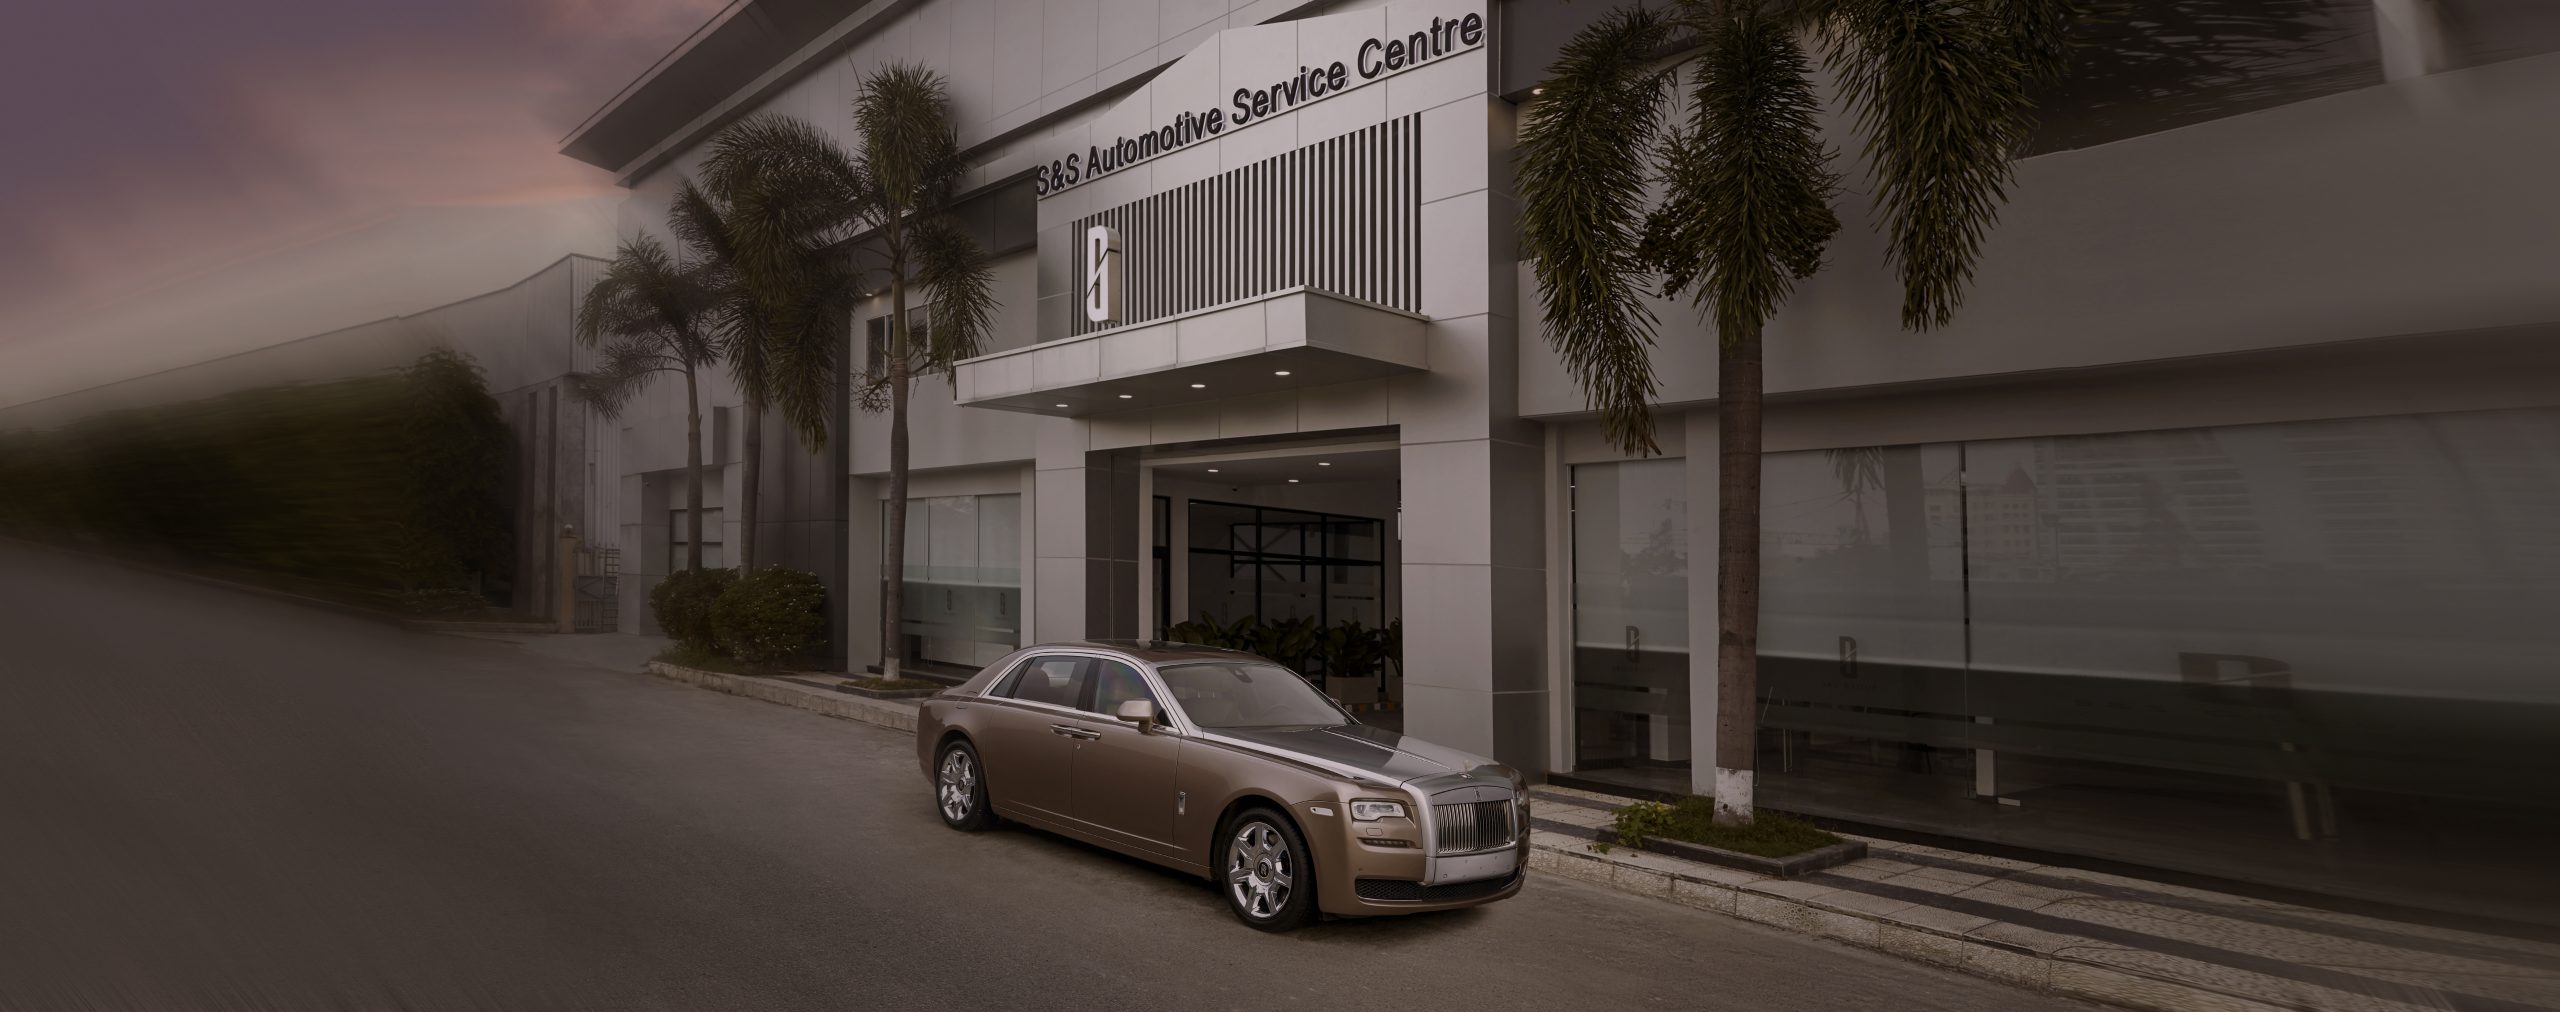 Rolls-Royce Motor Cars Khai Trương Xưởng Dịch Vụ Chính Hãng Tại TP. Hồ Chí Minh